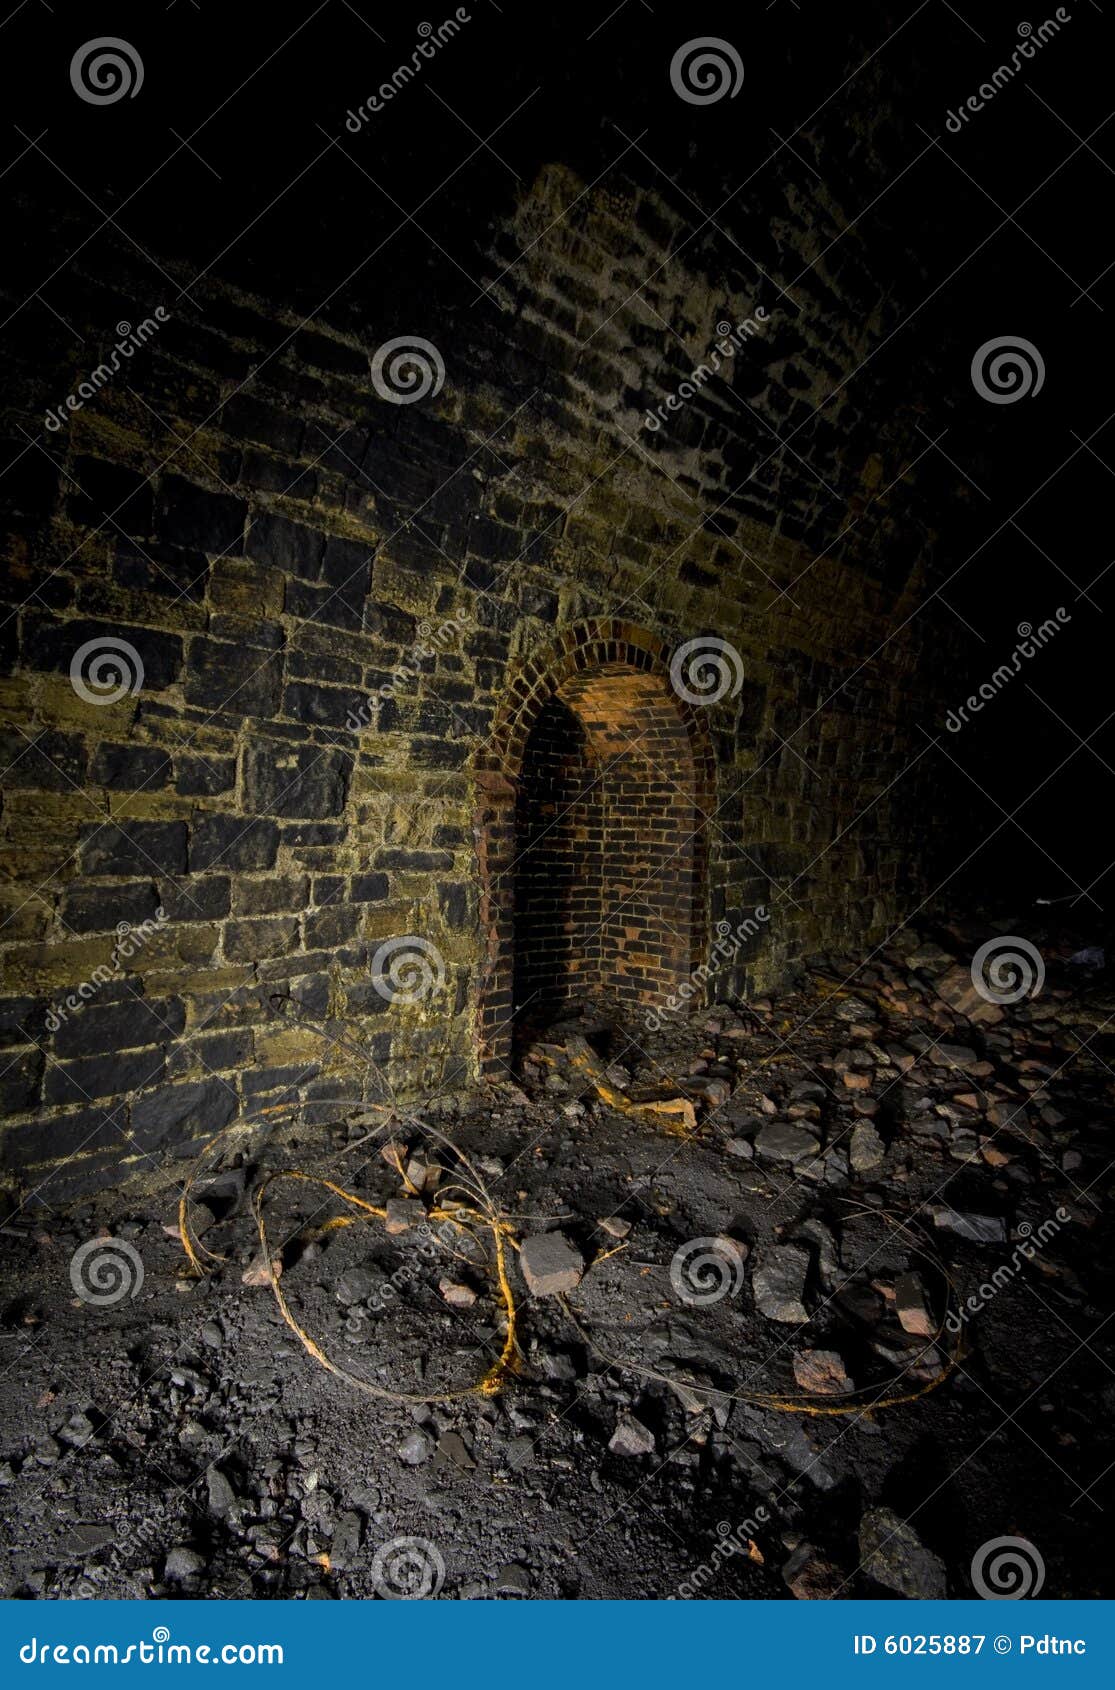 dark refuge railway tunnels